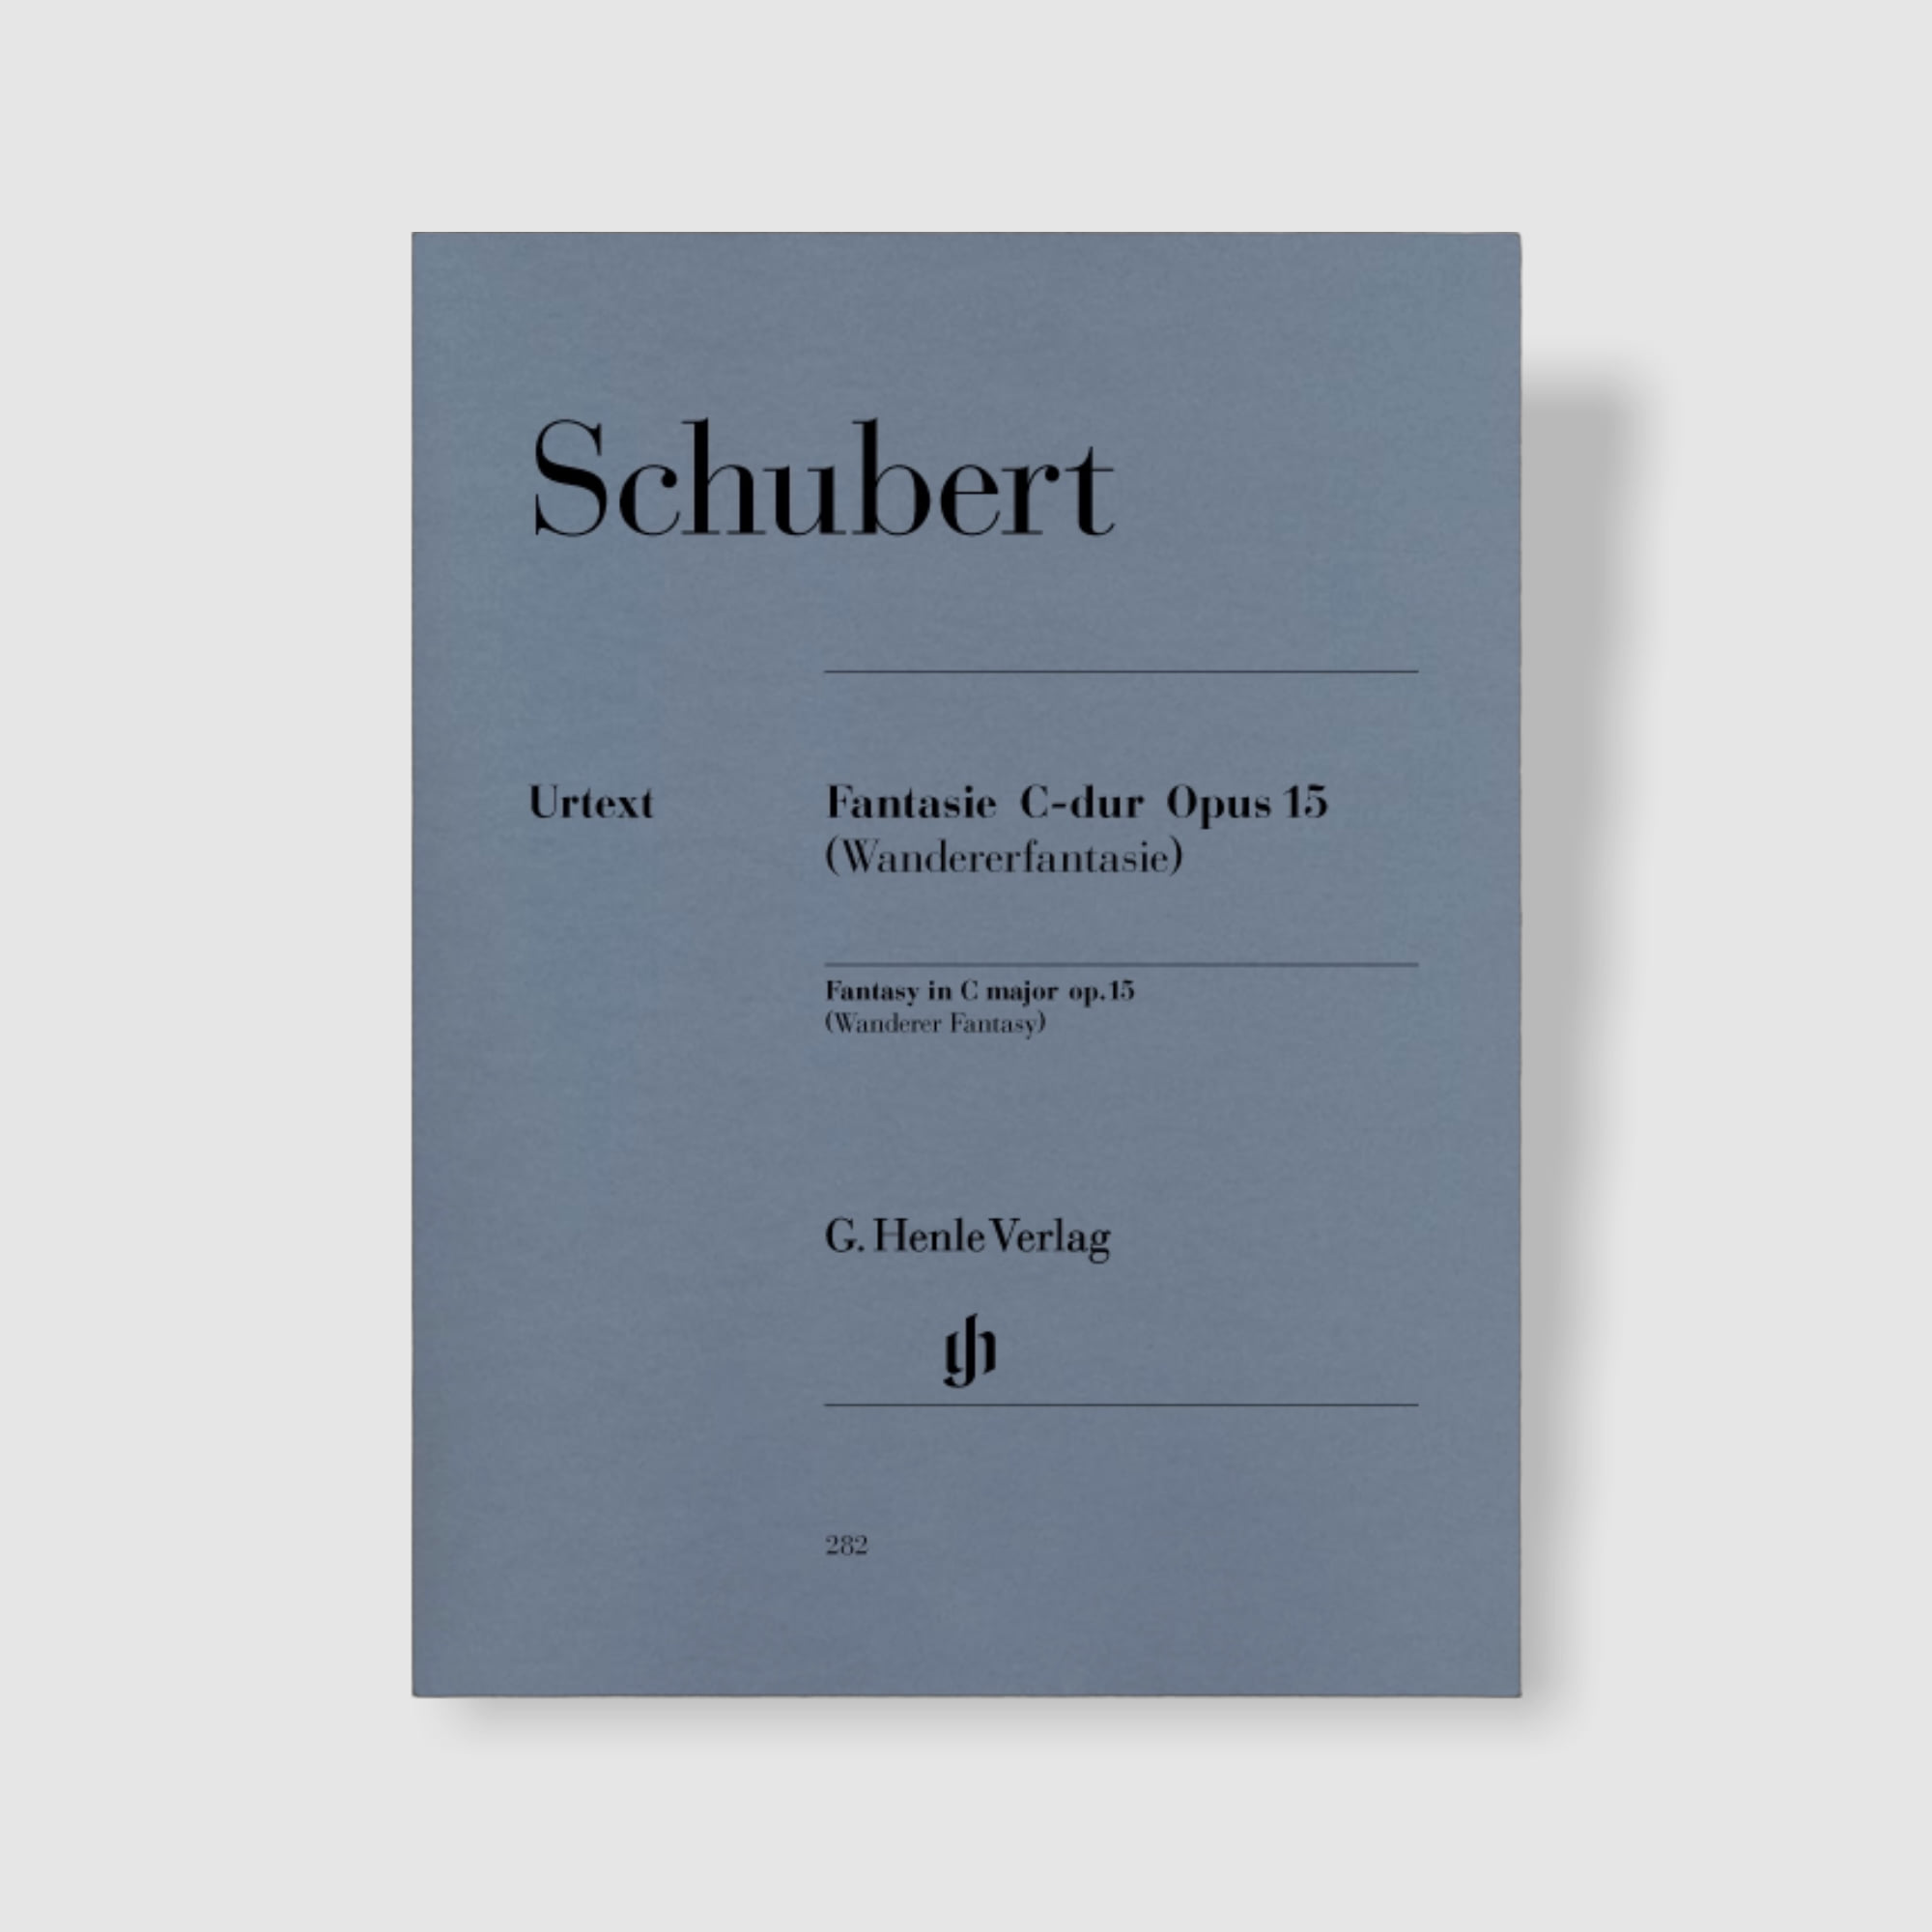 슈베르트 환상곡 in C Major, Op. 15 D 760